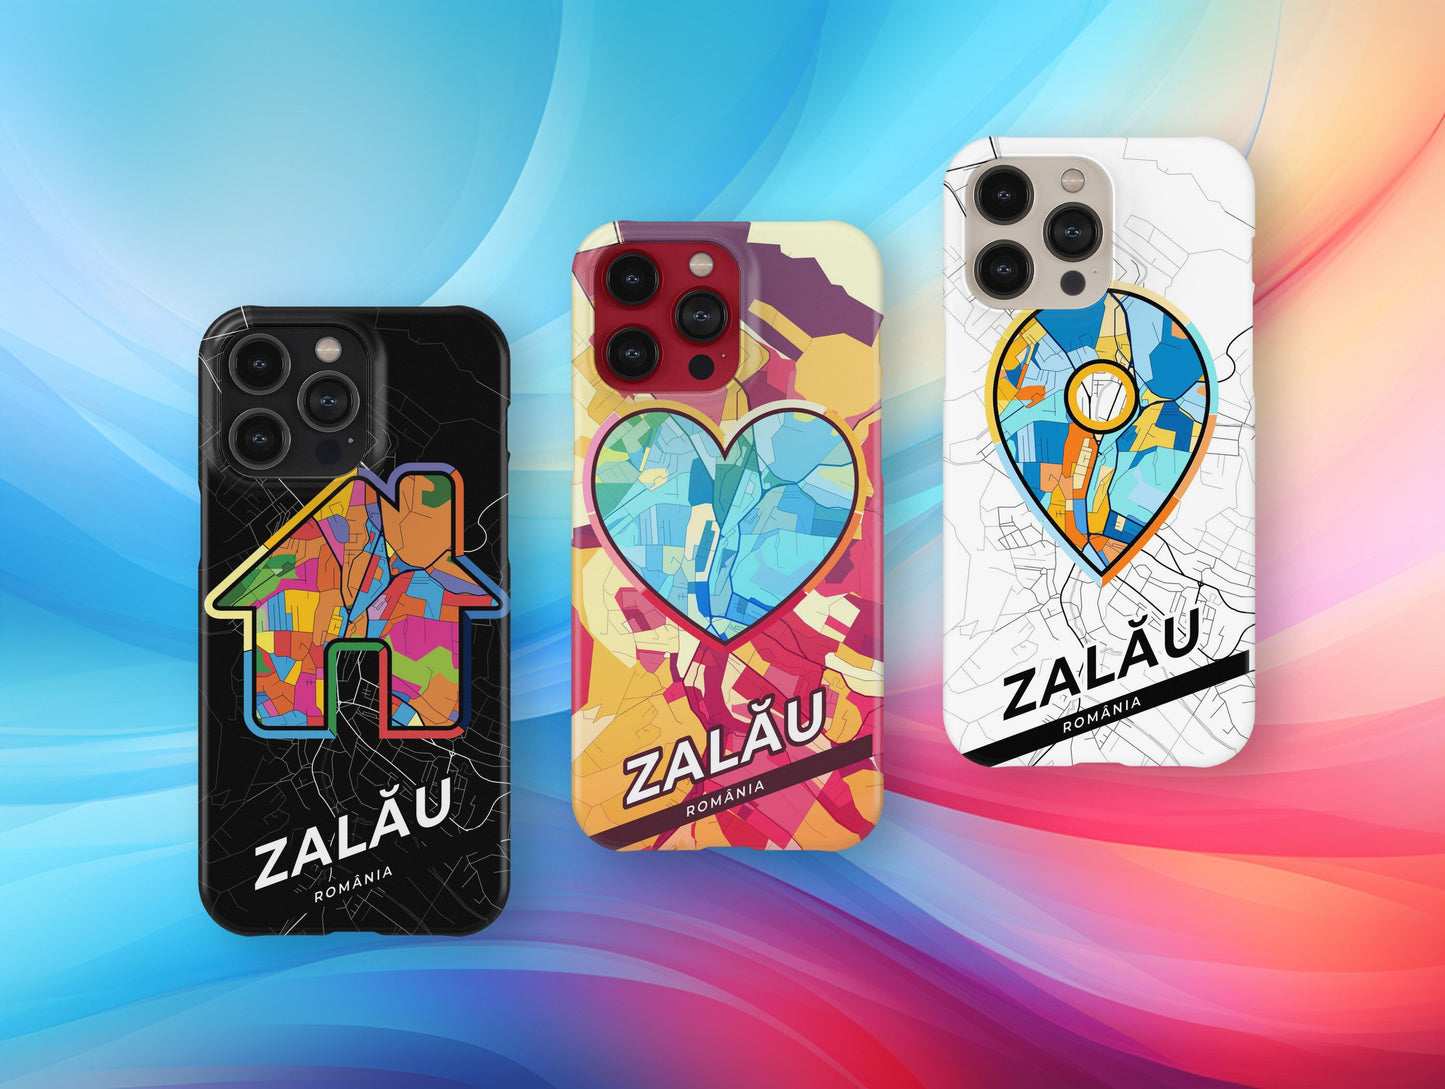 Zalău Romania slim phone case with colorful icon